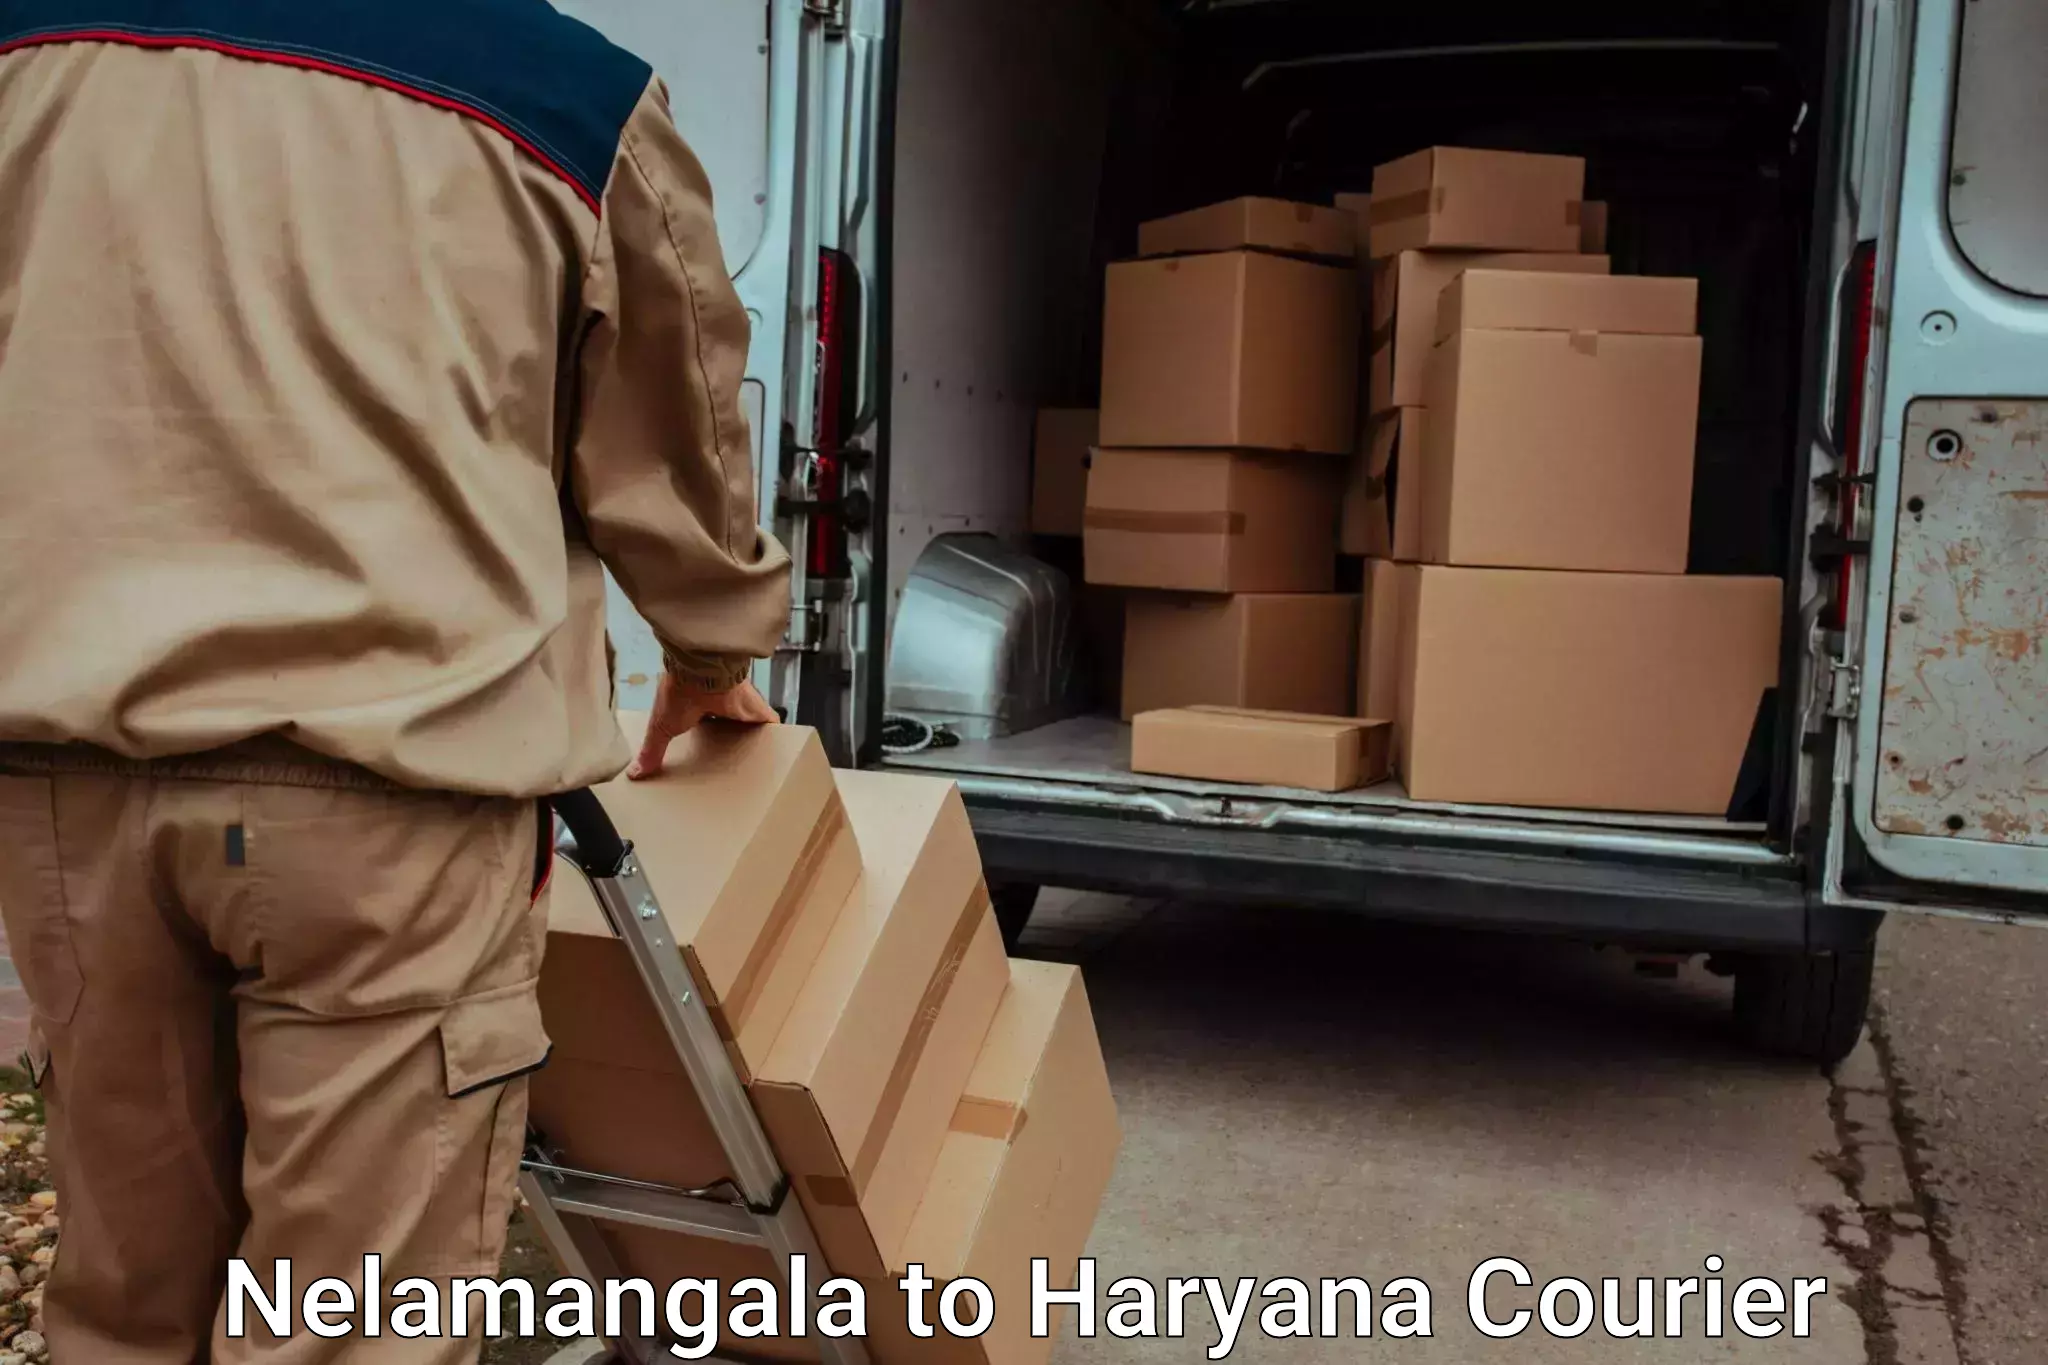 Professional packing services Nelamangala to Gurgaon